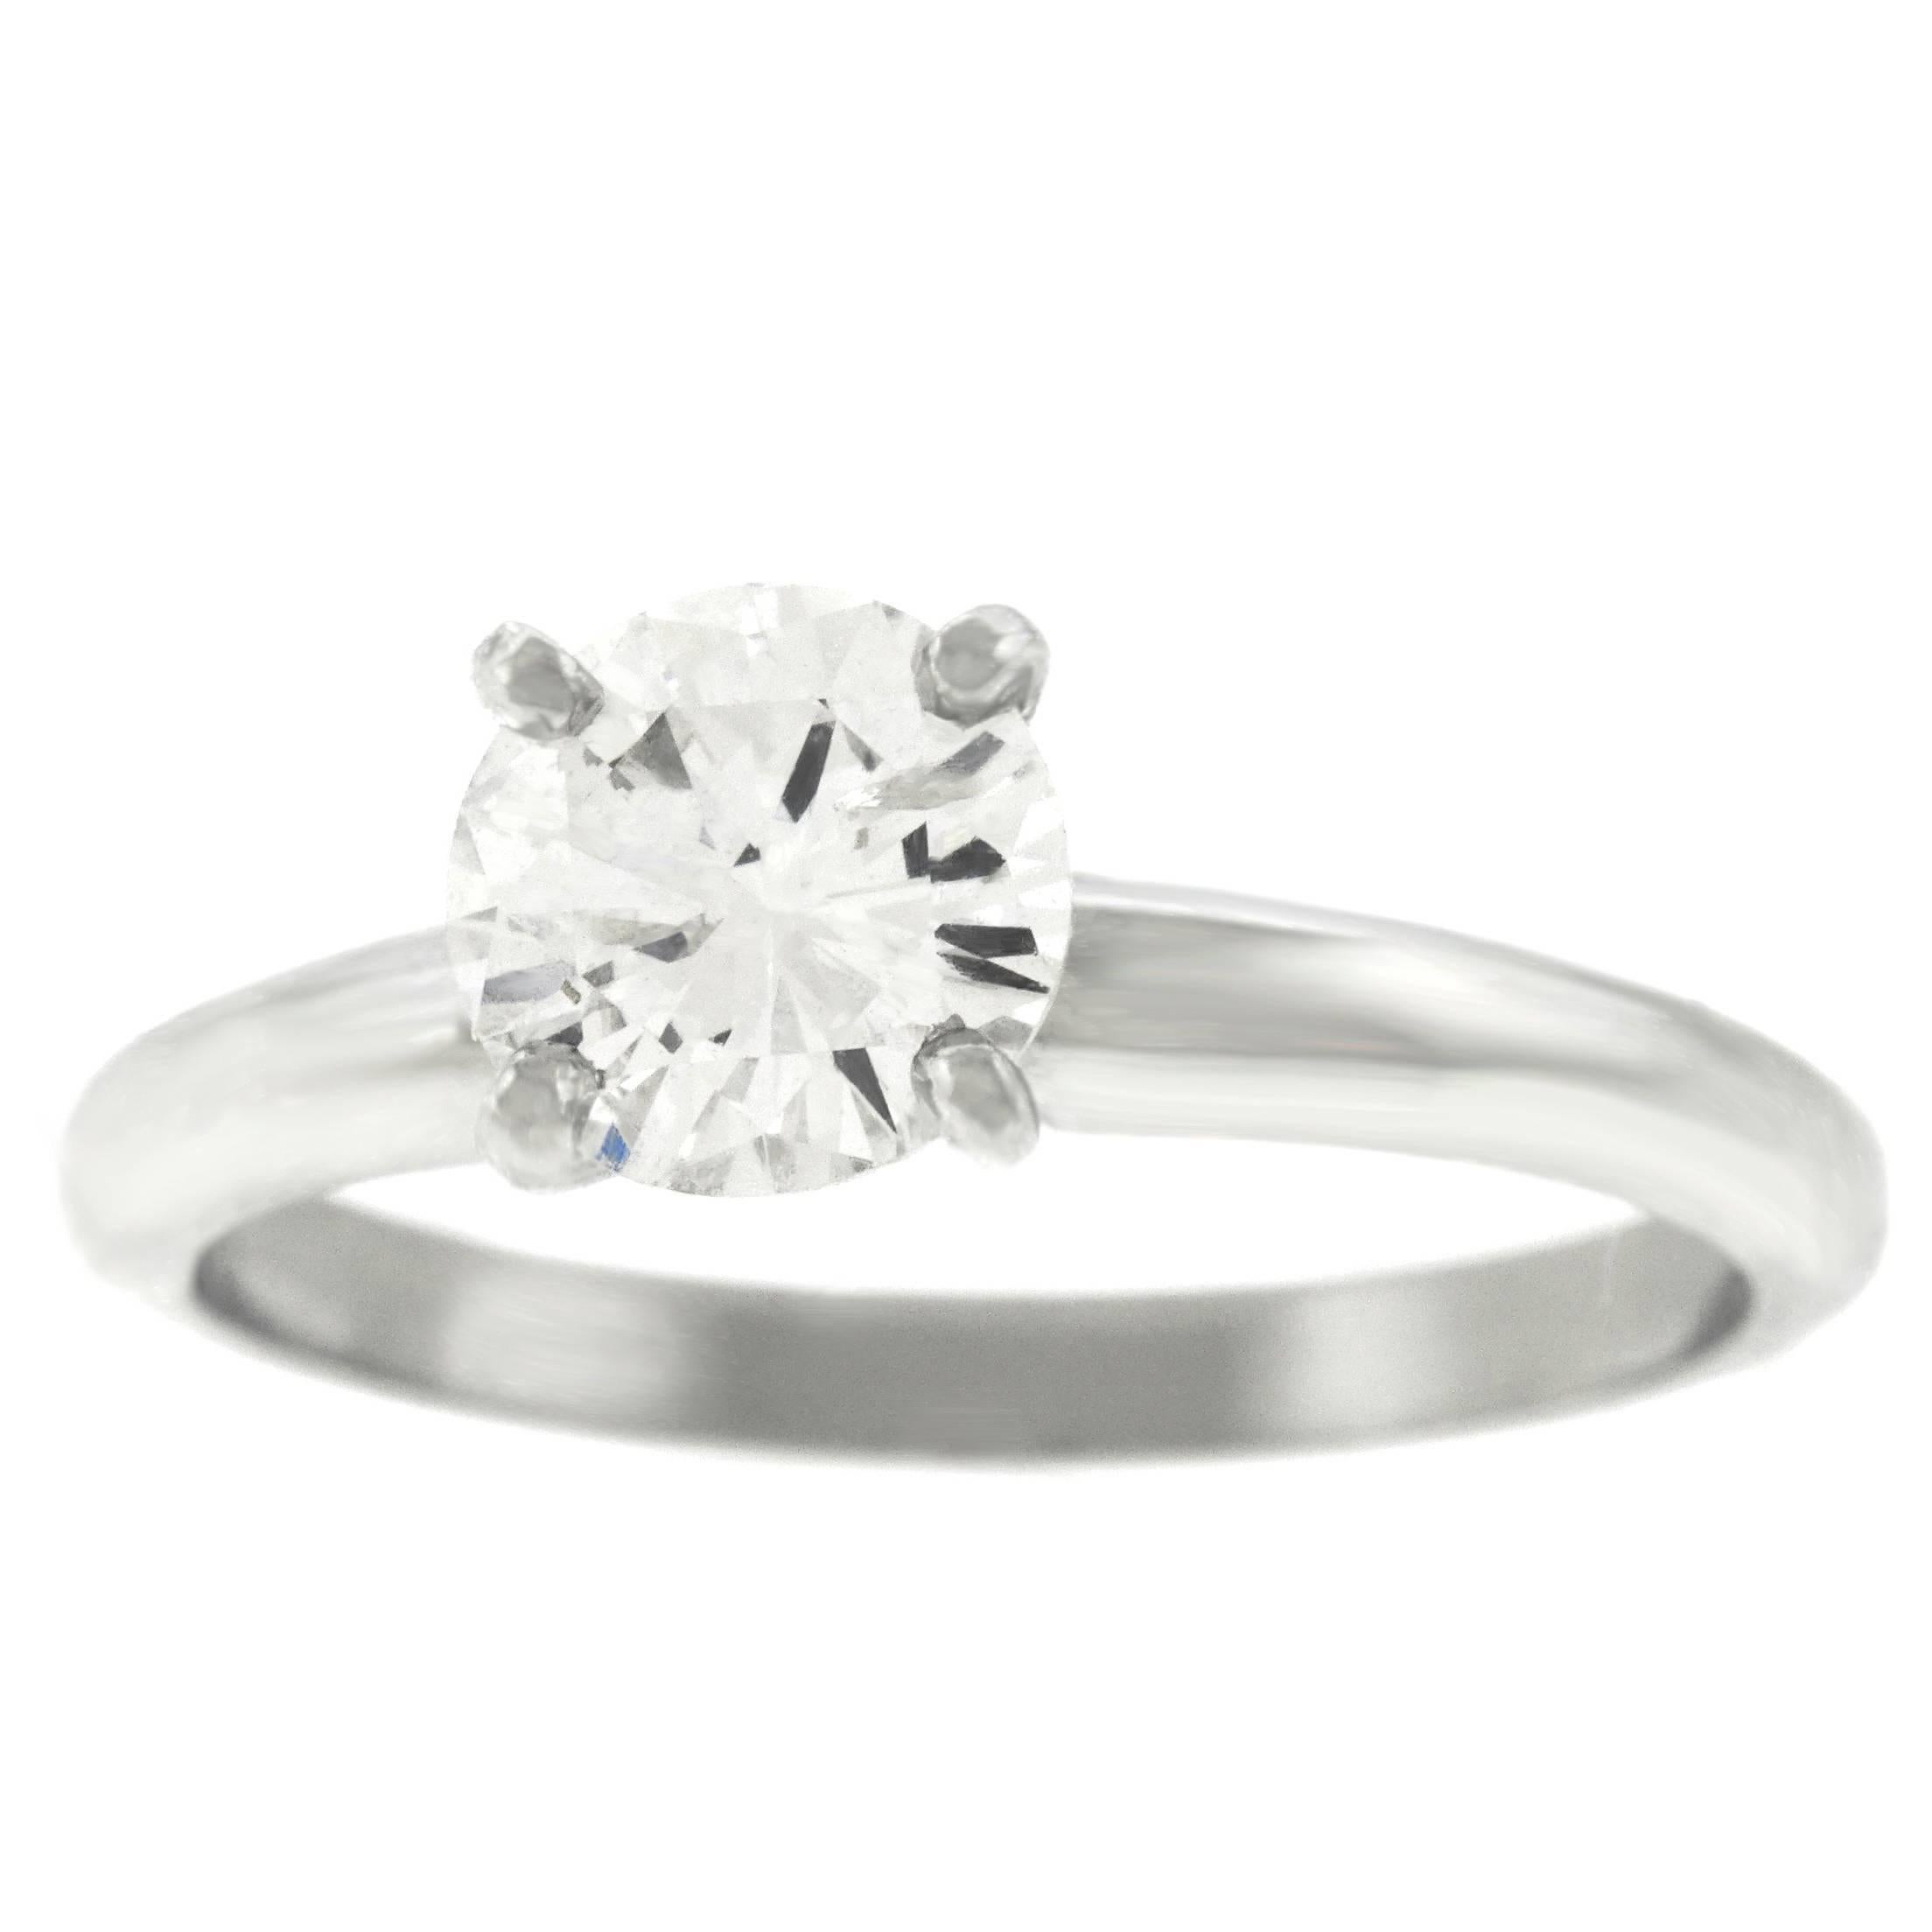 1.11 Carat Diamond Engagement Ring in Platinum GIA